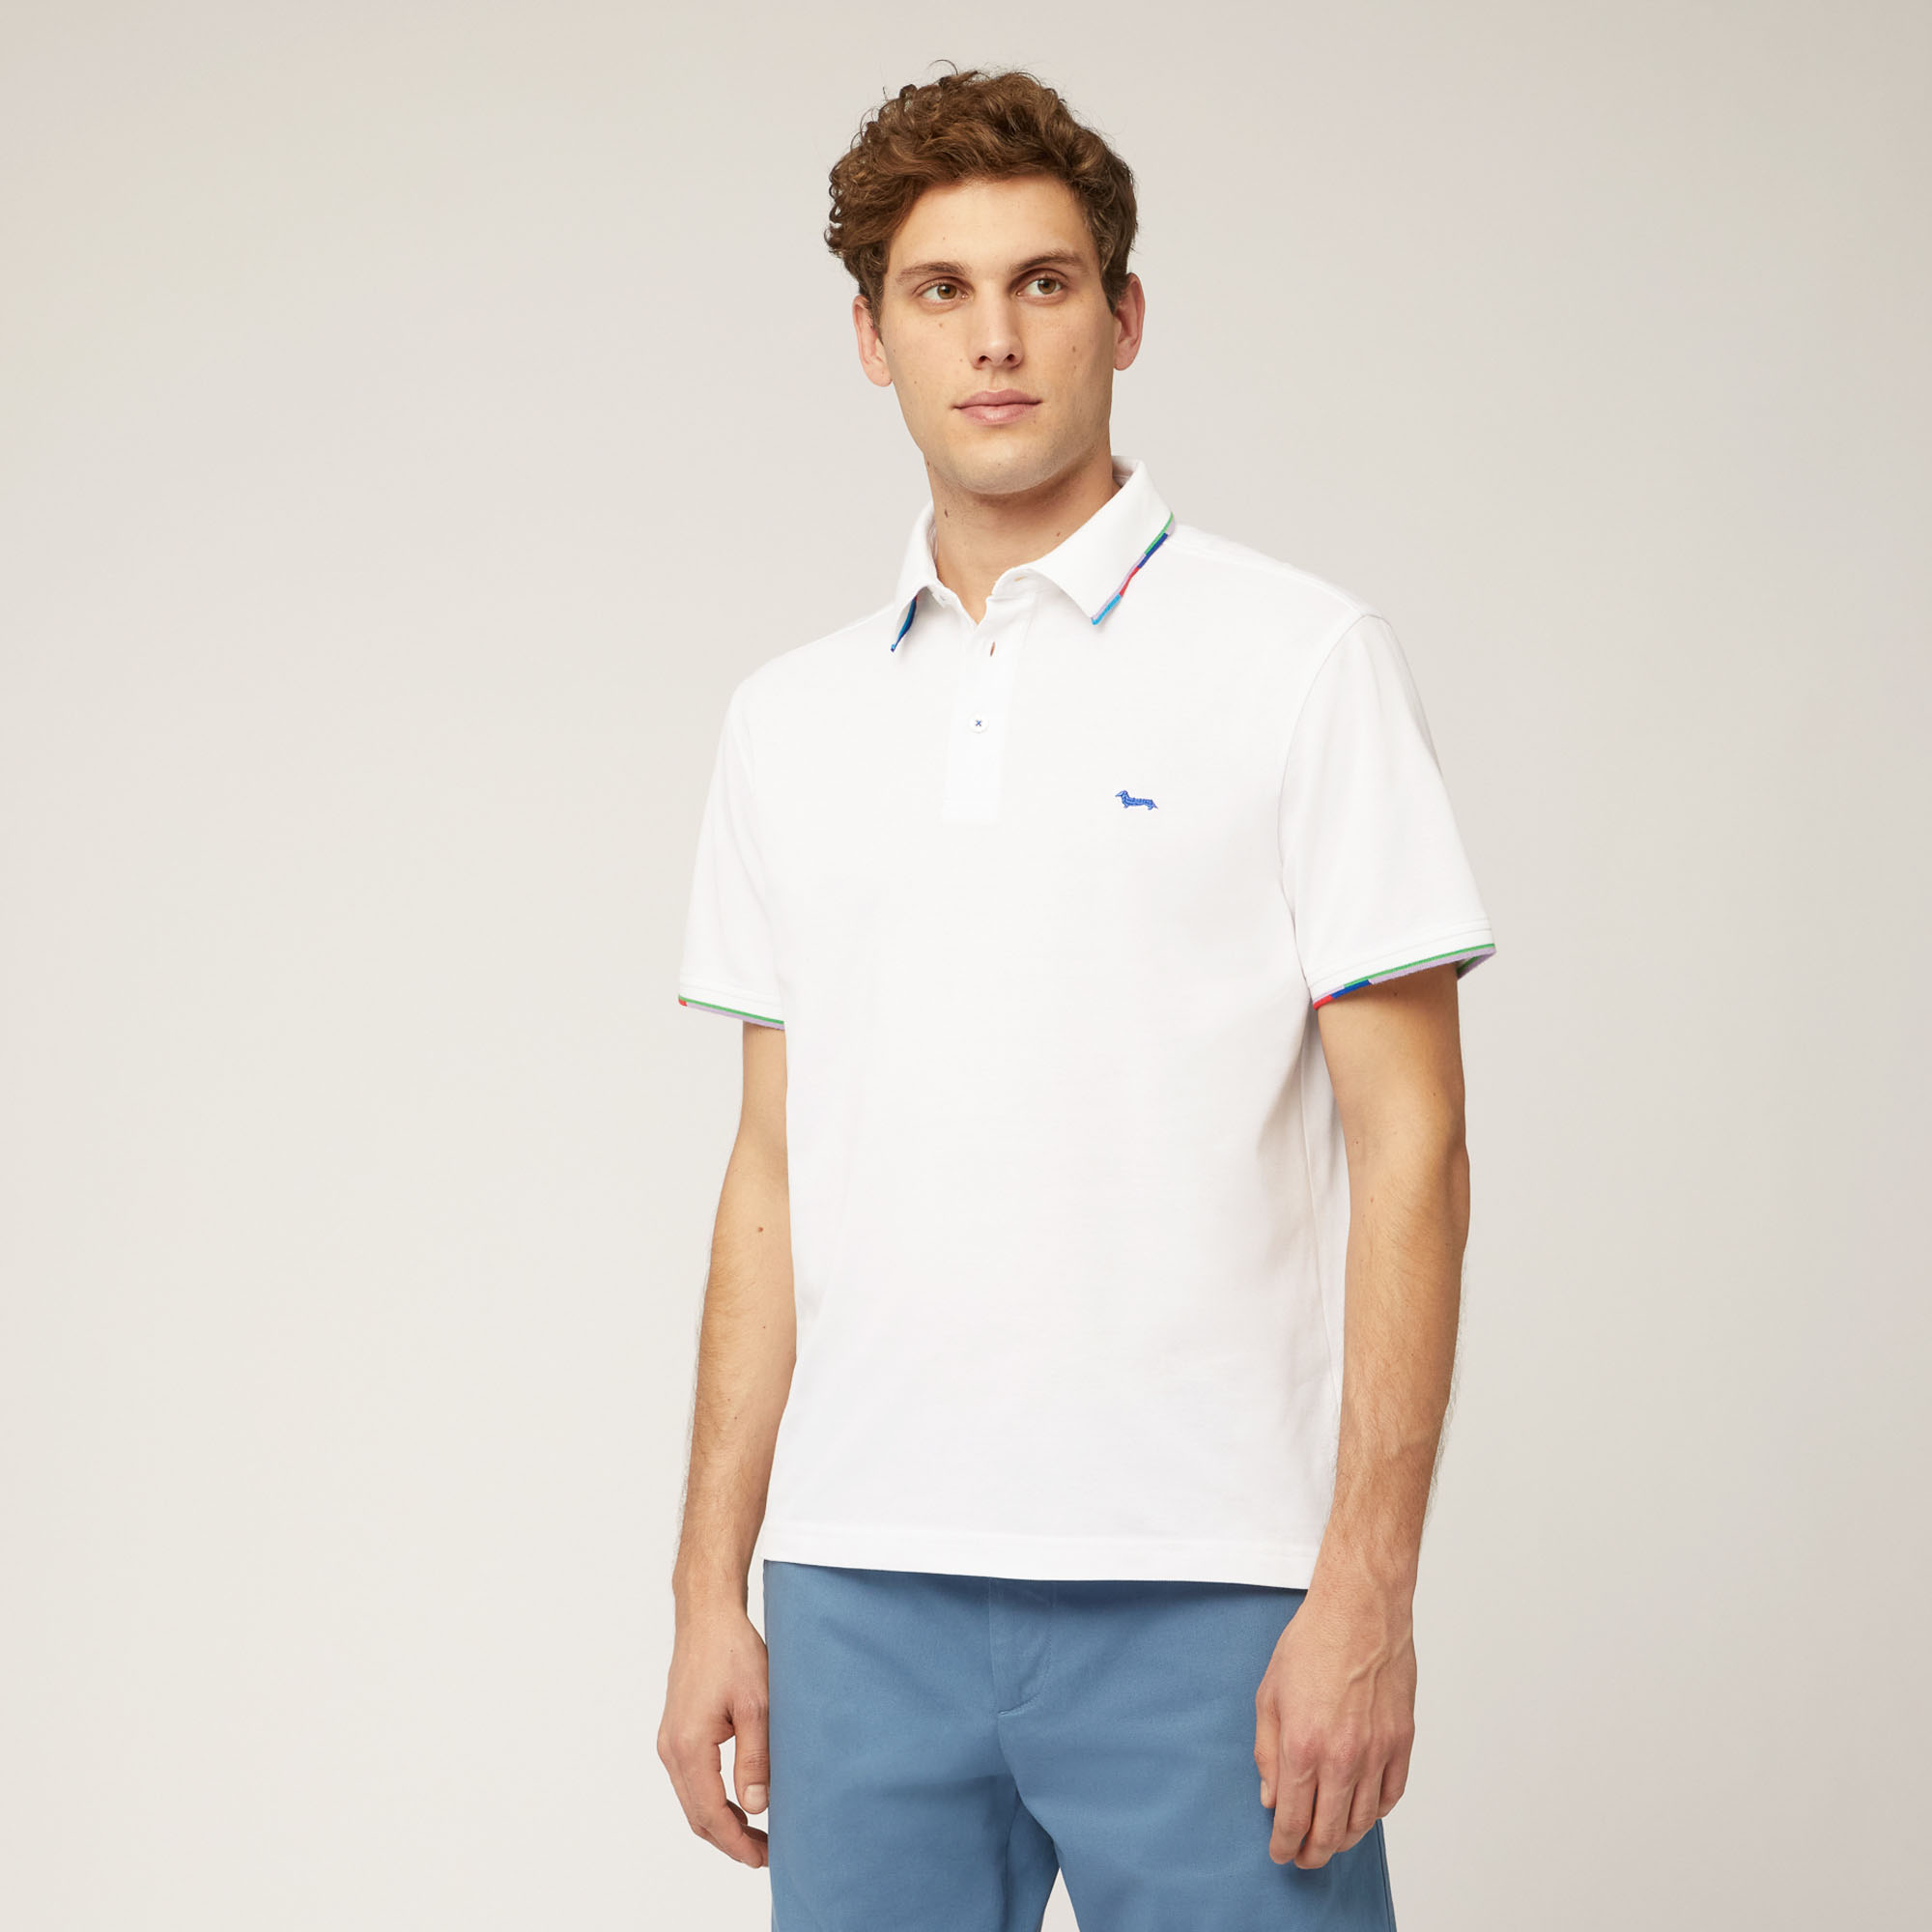 Poloshirt mit mehrfarbigen Details, Weiß, large image number 0